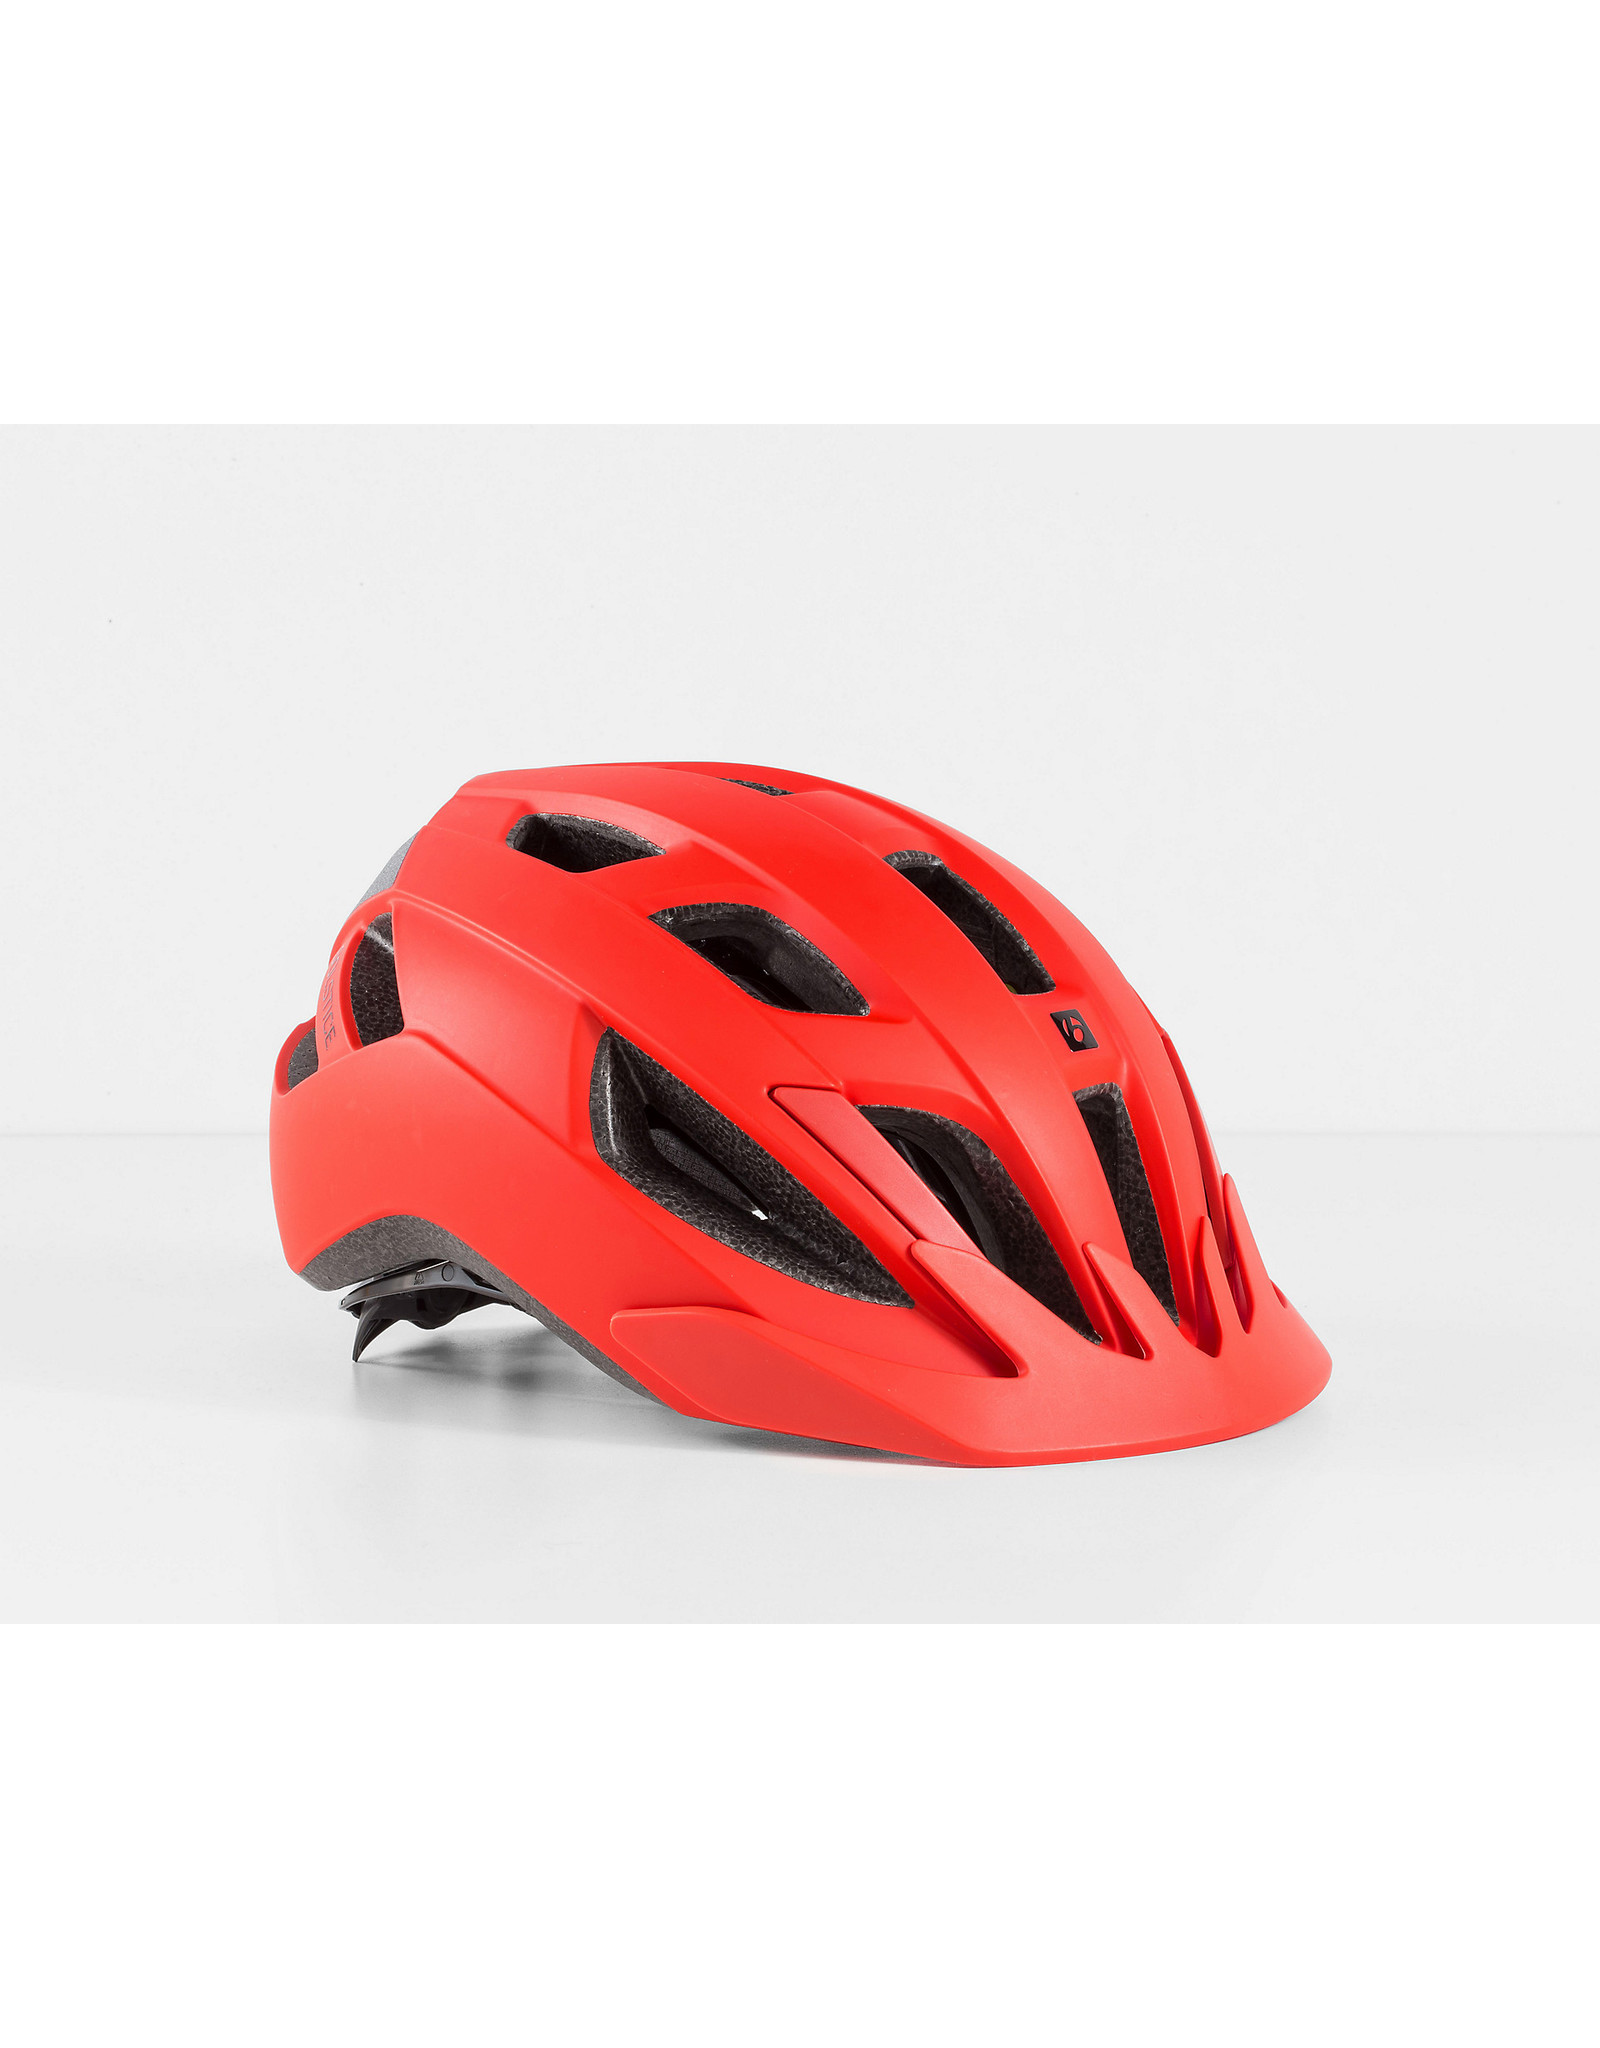 BONTRAGER Bontrager Solstice MIPS Bike Helmet